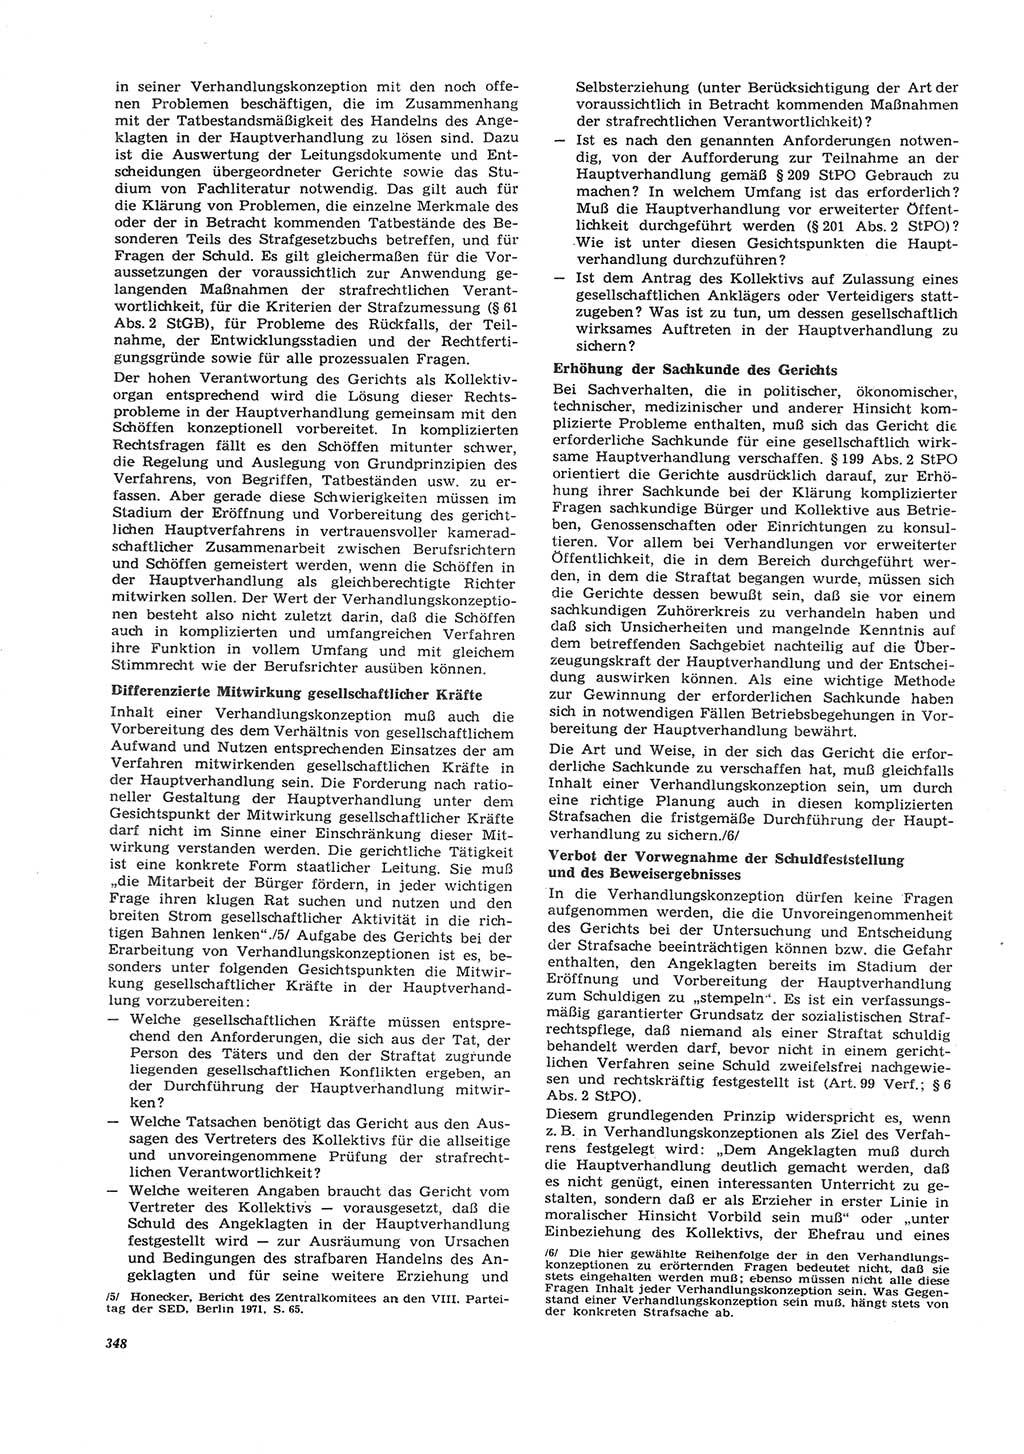 Neue Justiz (NJ), Zeitschrift für Recht und Rechtswissenschaft [Deutsche Demokratische Republik (DDR)], 26. Jahrgang 1972, Seite 348 (NJ DDR 1972, S. 348)